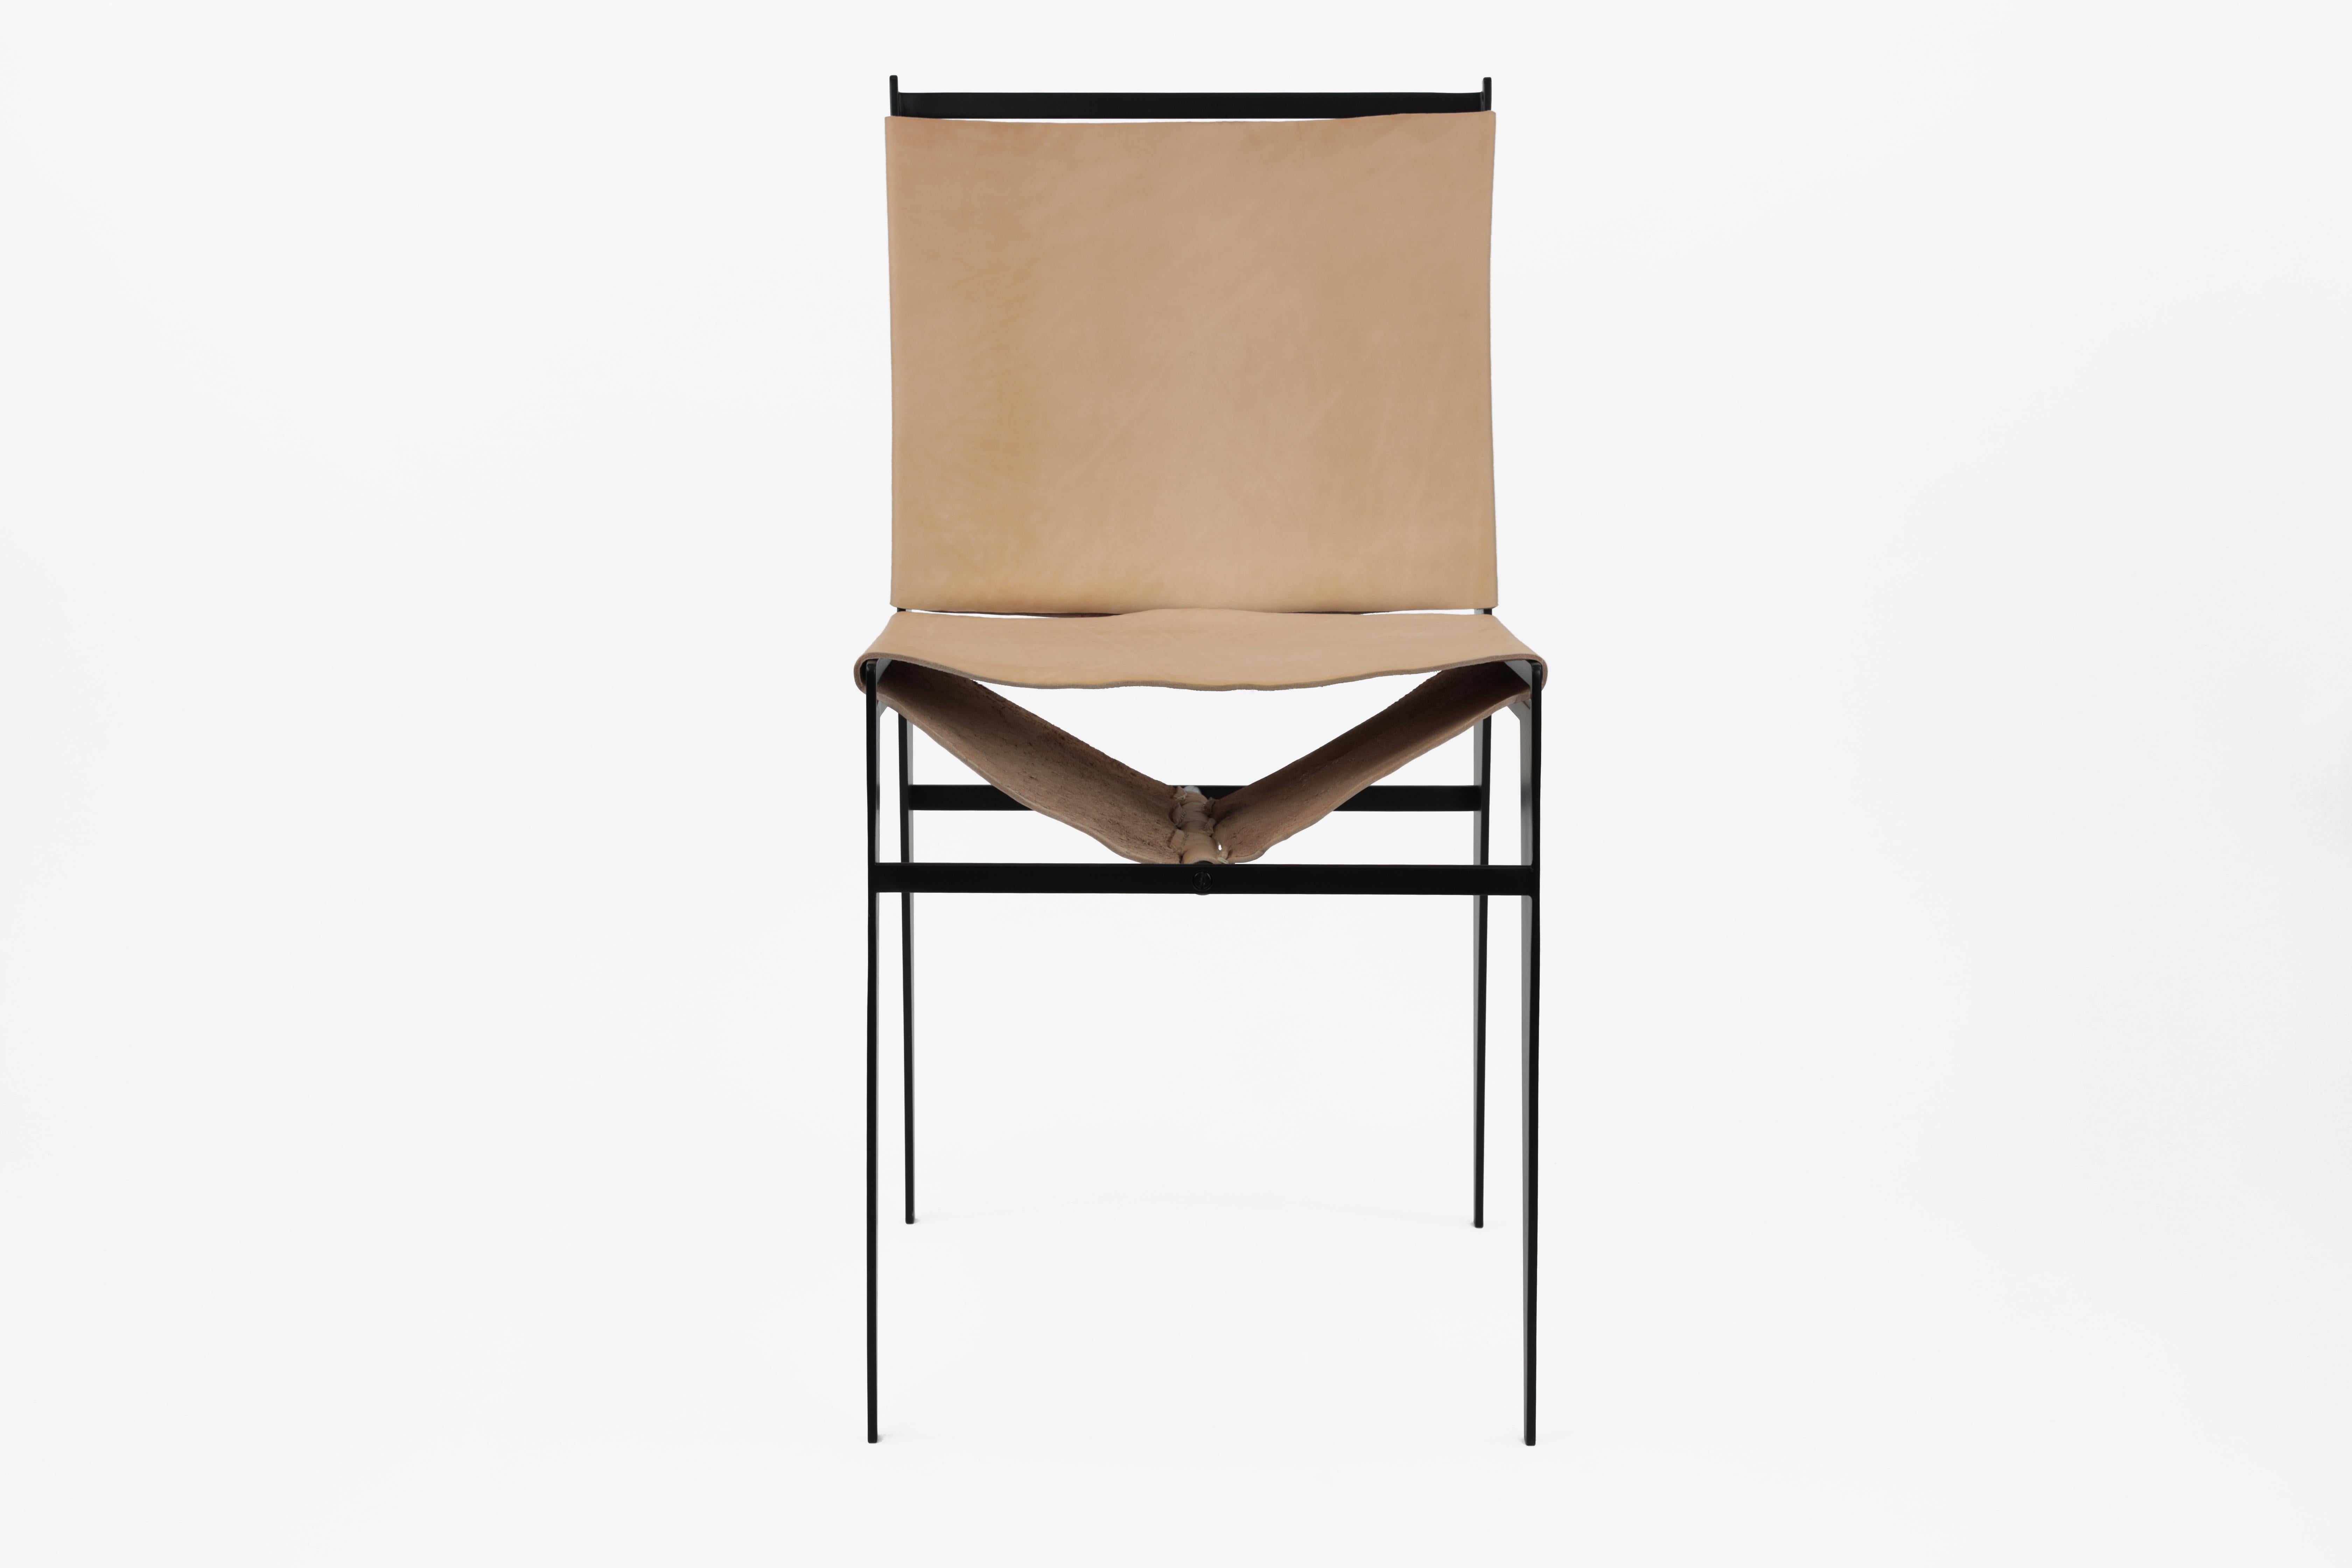 Der Icon Chair ist aus Stahl gefertigt und schwarz pulverbeschichtet. Seine Gelenke sind sorgfältig verschweißt, wodurch ein stromlinienförmiges Design entsteht. Die Linien des Rahmens und des Leders bilden geometrische Formen, die sich aus jedem